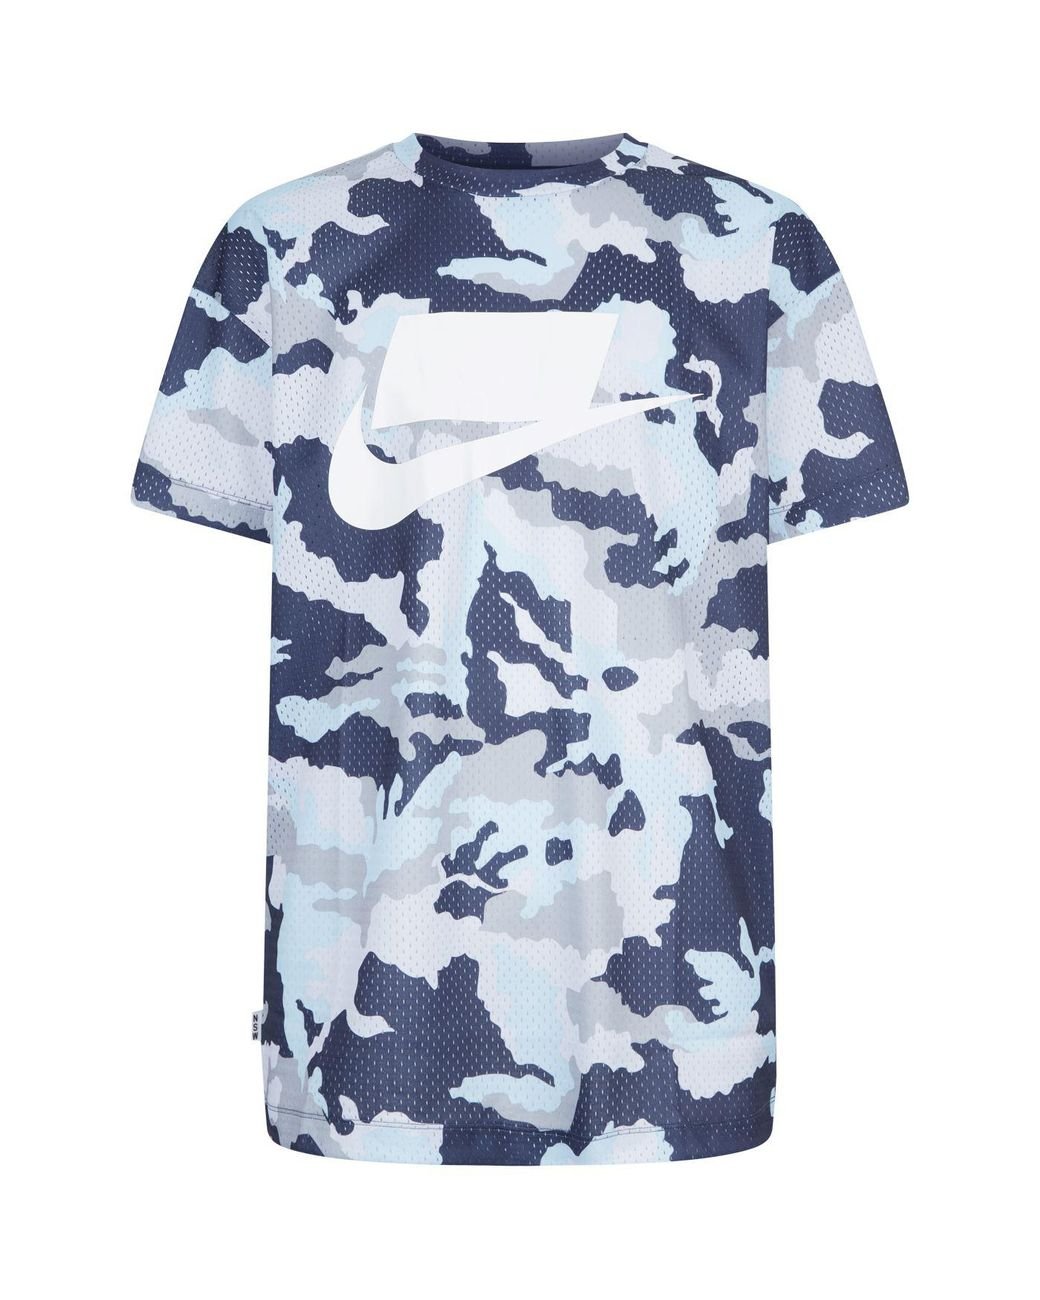 Nike Sportswear Camouflage T-shirt in Blue for Men Lyst